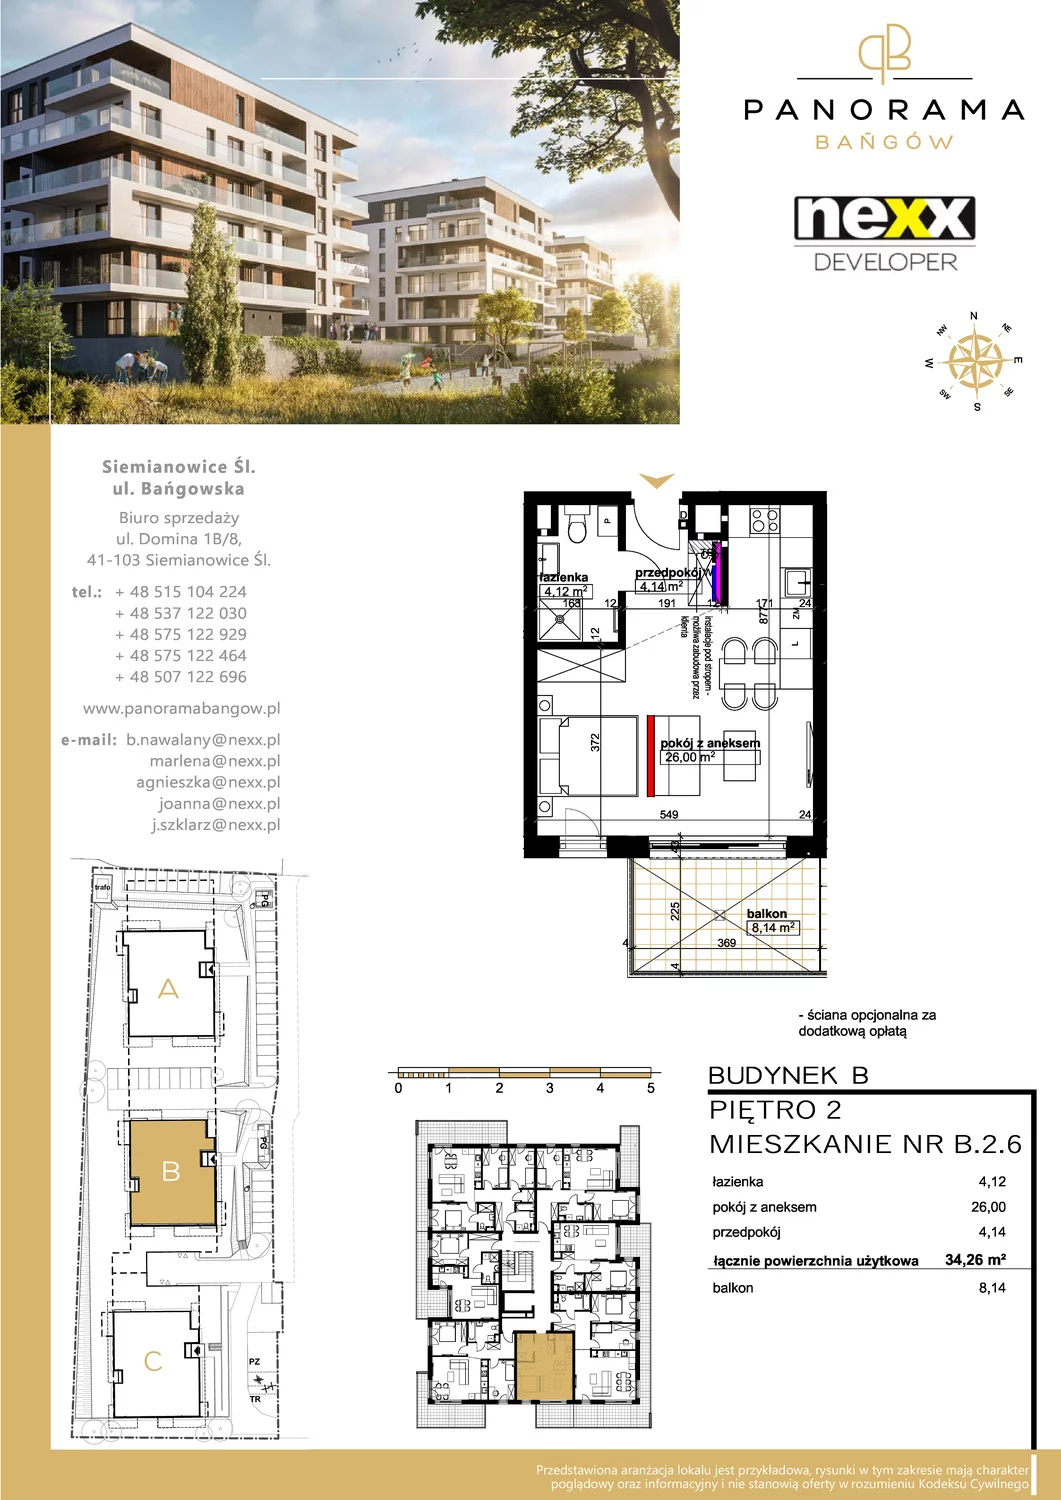 Mieszkanie 34,26 m², piętro 2, oferta nr B 2.6, Panorama Bańgów, Siemianowice Śląskie, Bańgów, ul. Bańgowska